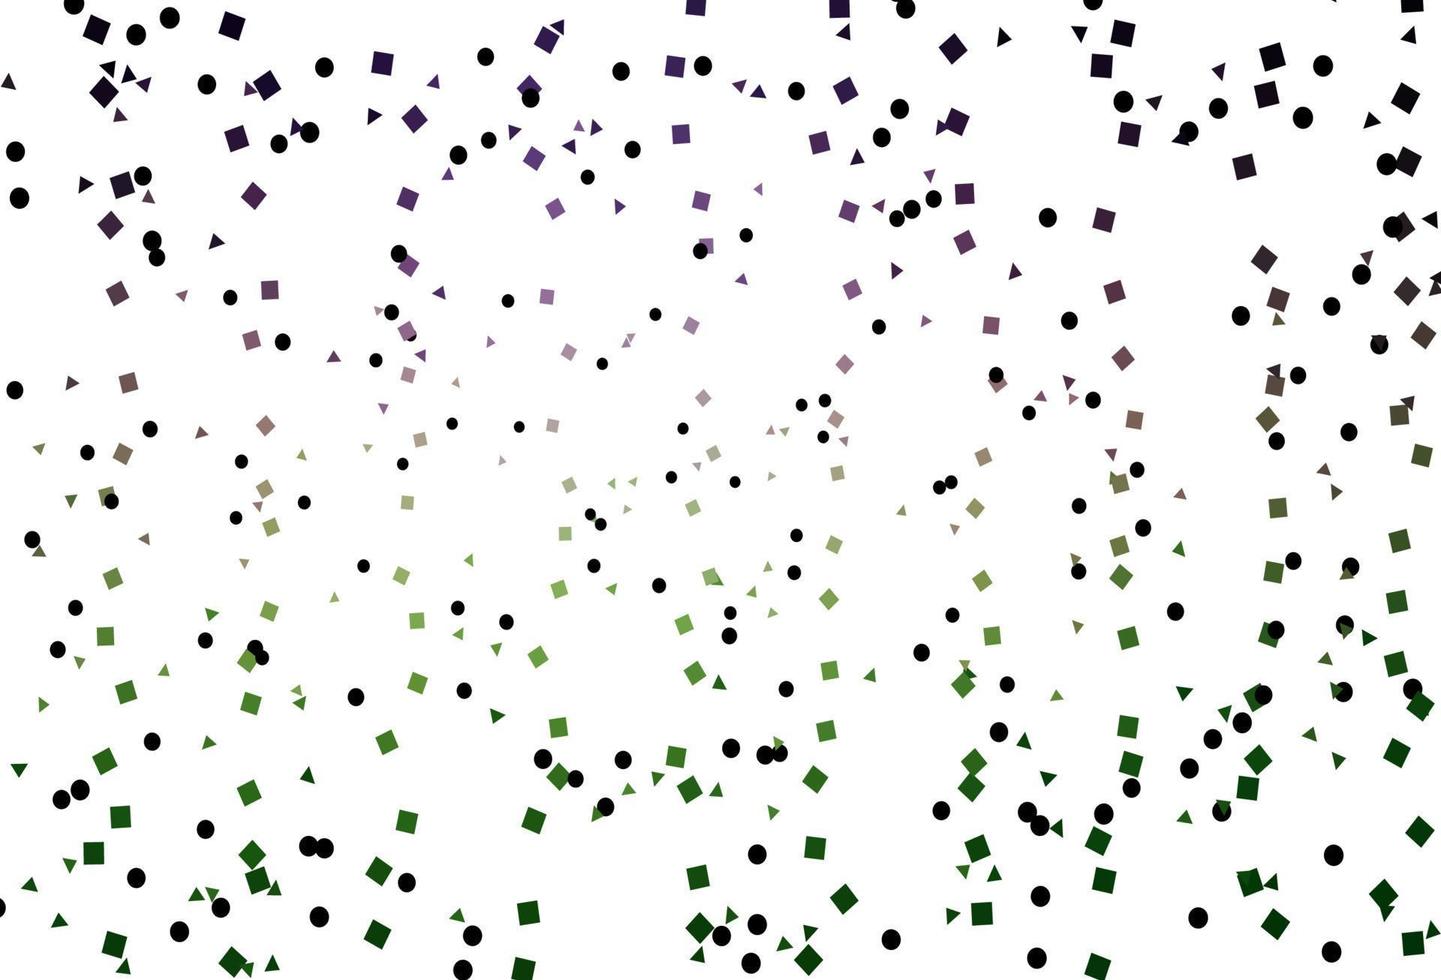 ljusrosa, grön vektor layout med cirklar, linjer, rektanglar.